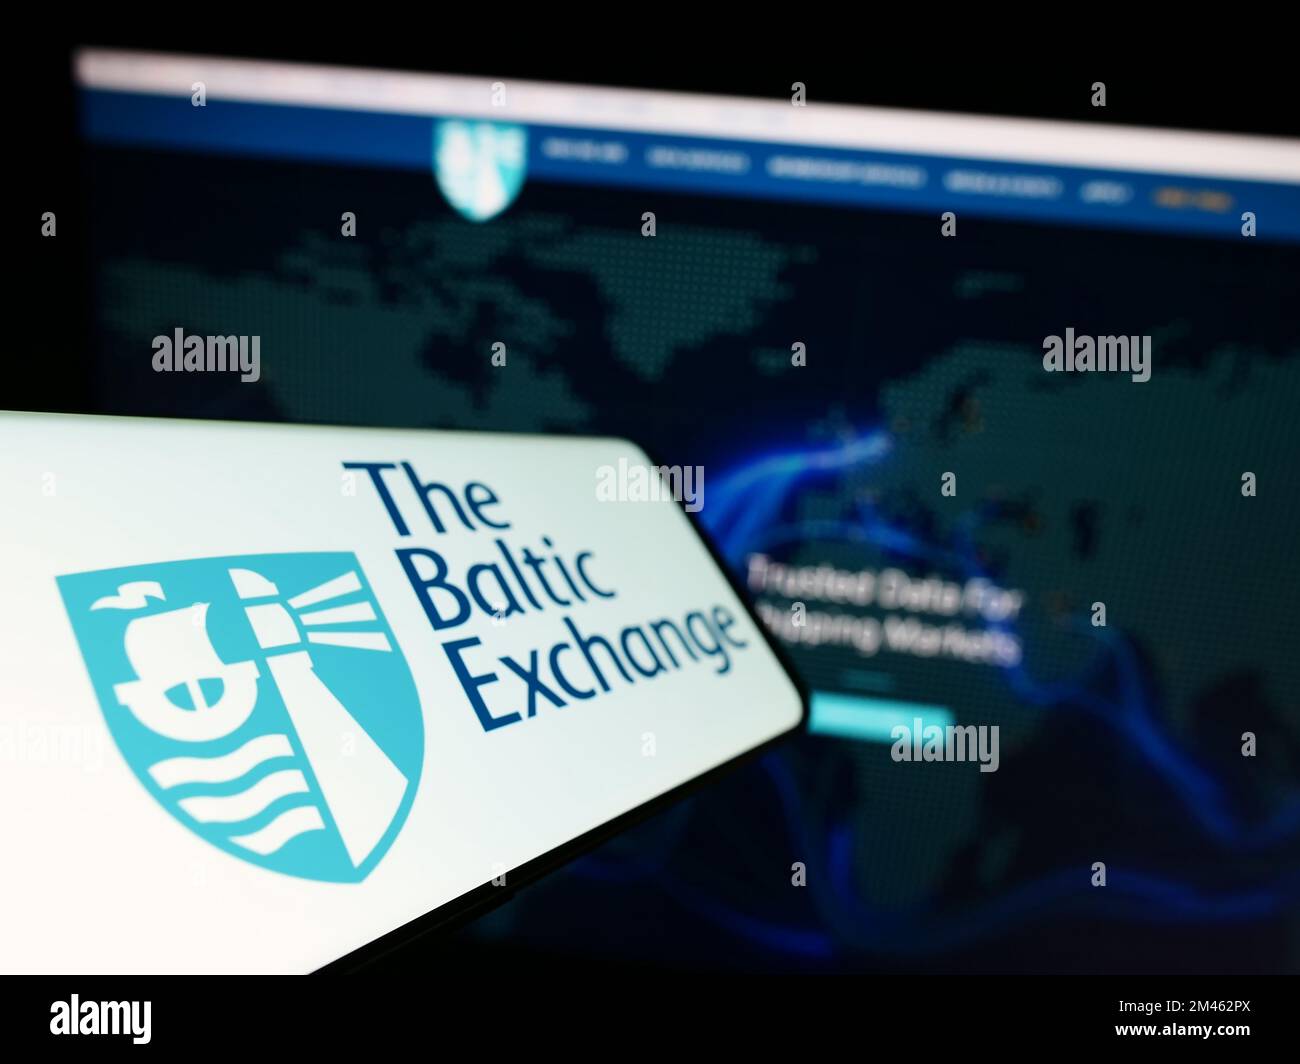 Cellulare con il logo della società britannica Baltic Exchange Limited sullo schermo di fronte al sito web aziendale. Messa a fuoco a sinistra del display del telefono. Foto Stock